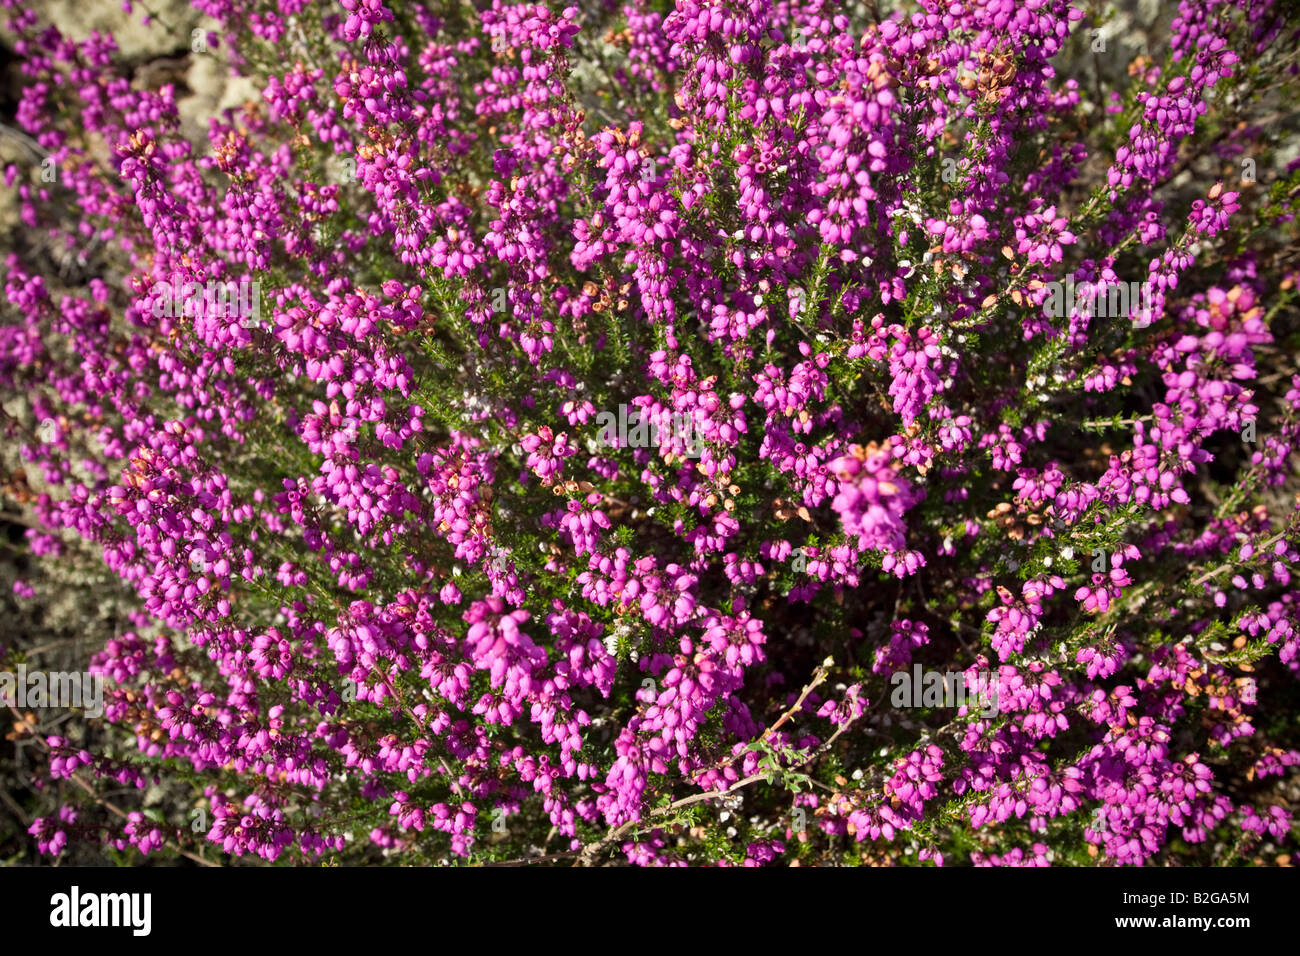 A clump of blossoming Bell Heathers (Erica cinerea), Touffe de Bruyère cendrée (Erica cinerea) en fleurs. Stock Photo